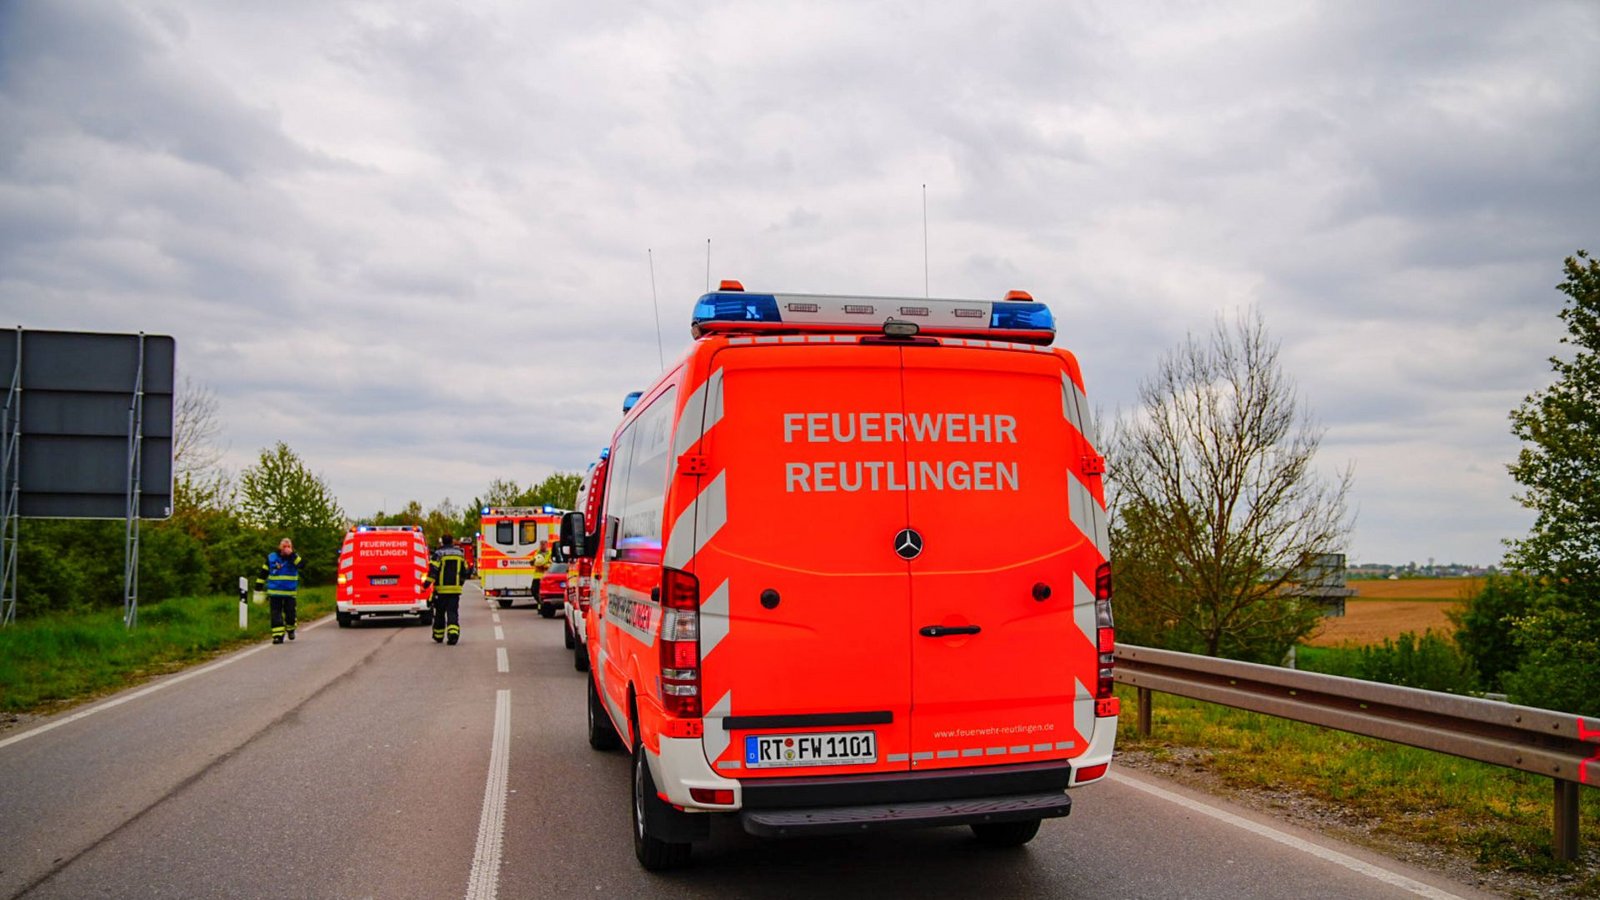 Foto: Einsatzkräfte der Feuerwehr Reutlingen waren ebenfalls im Einsatz./7aktuell.de